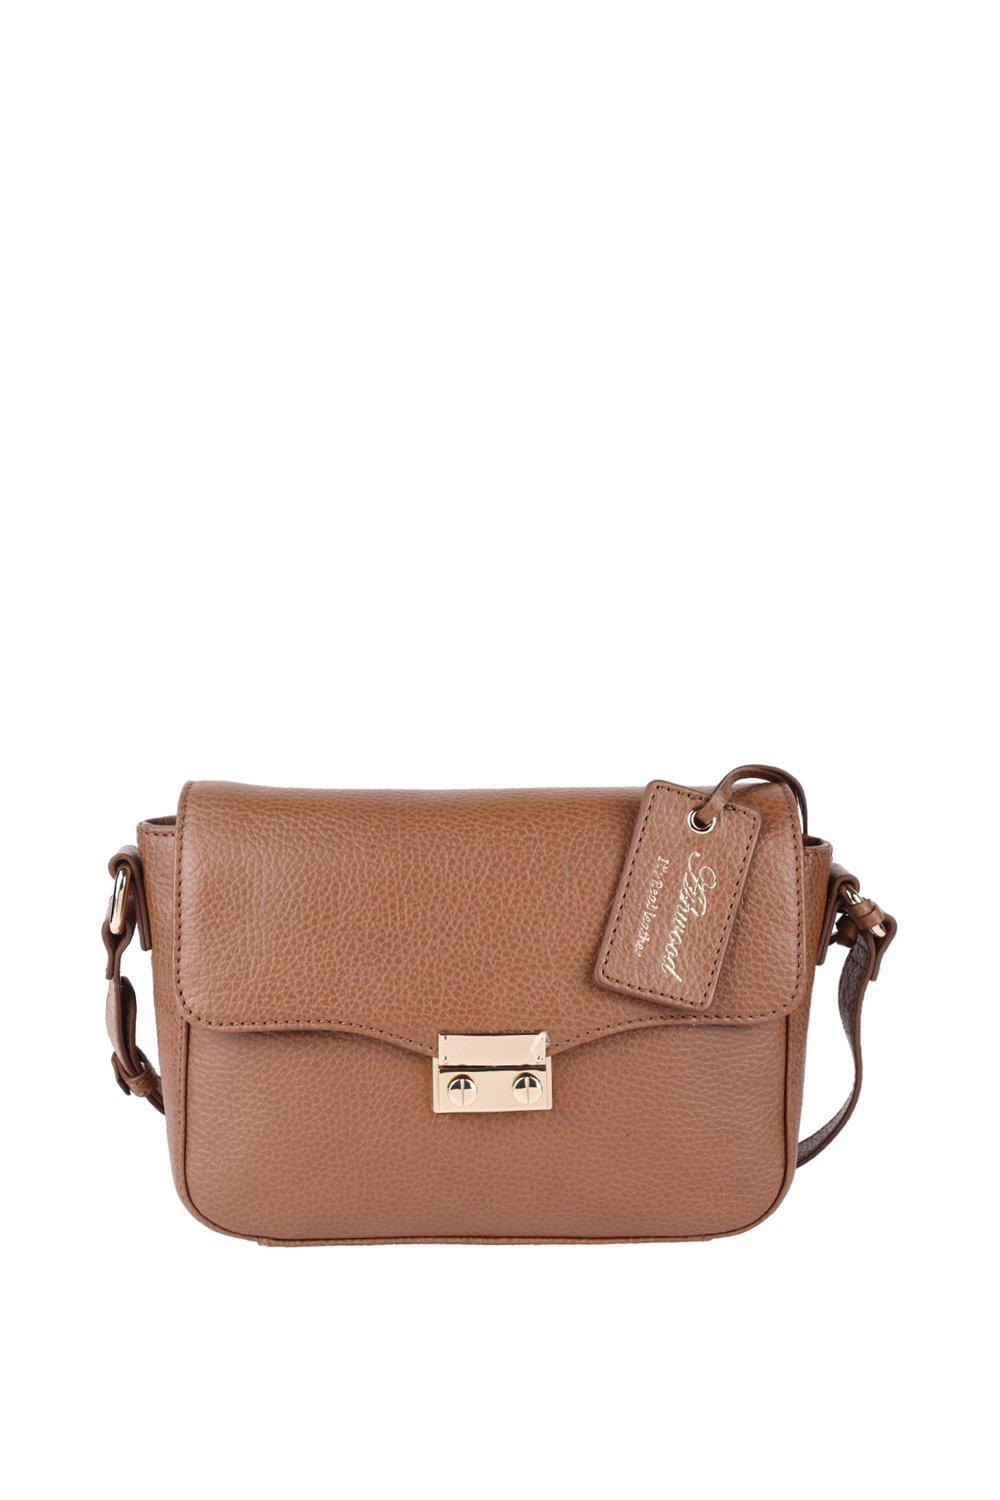 Кожаная сумка через плечо 'Elegance' Ashwood Leather, коричневый